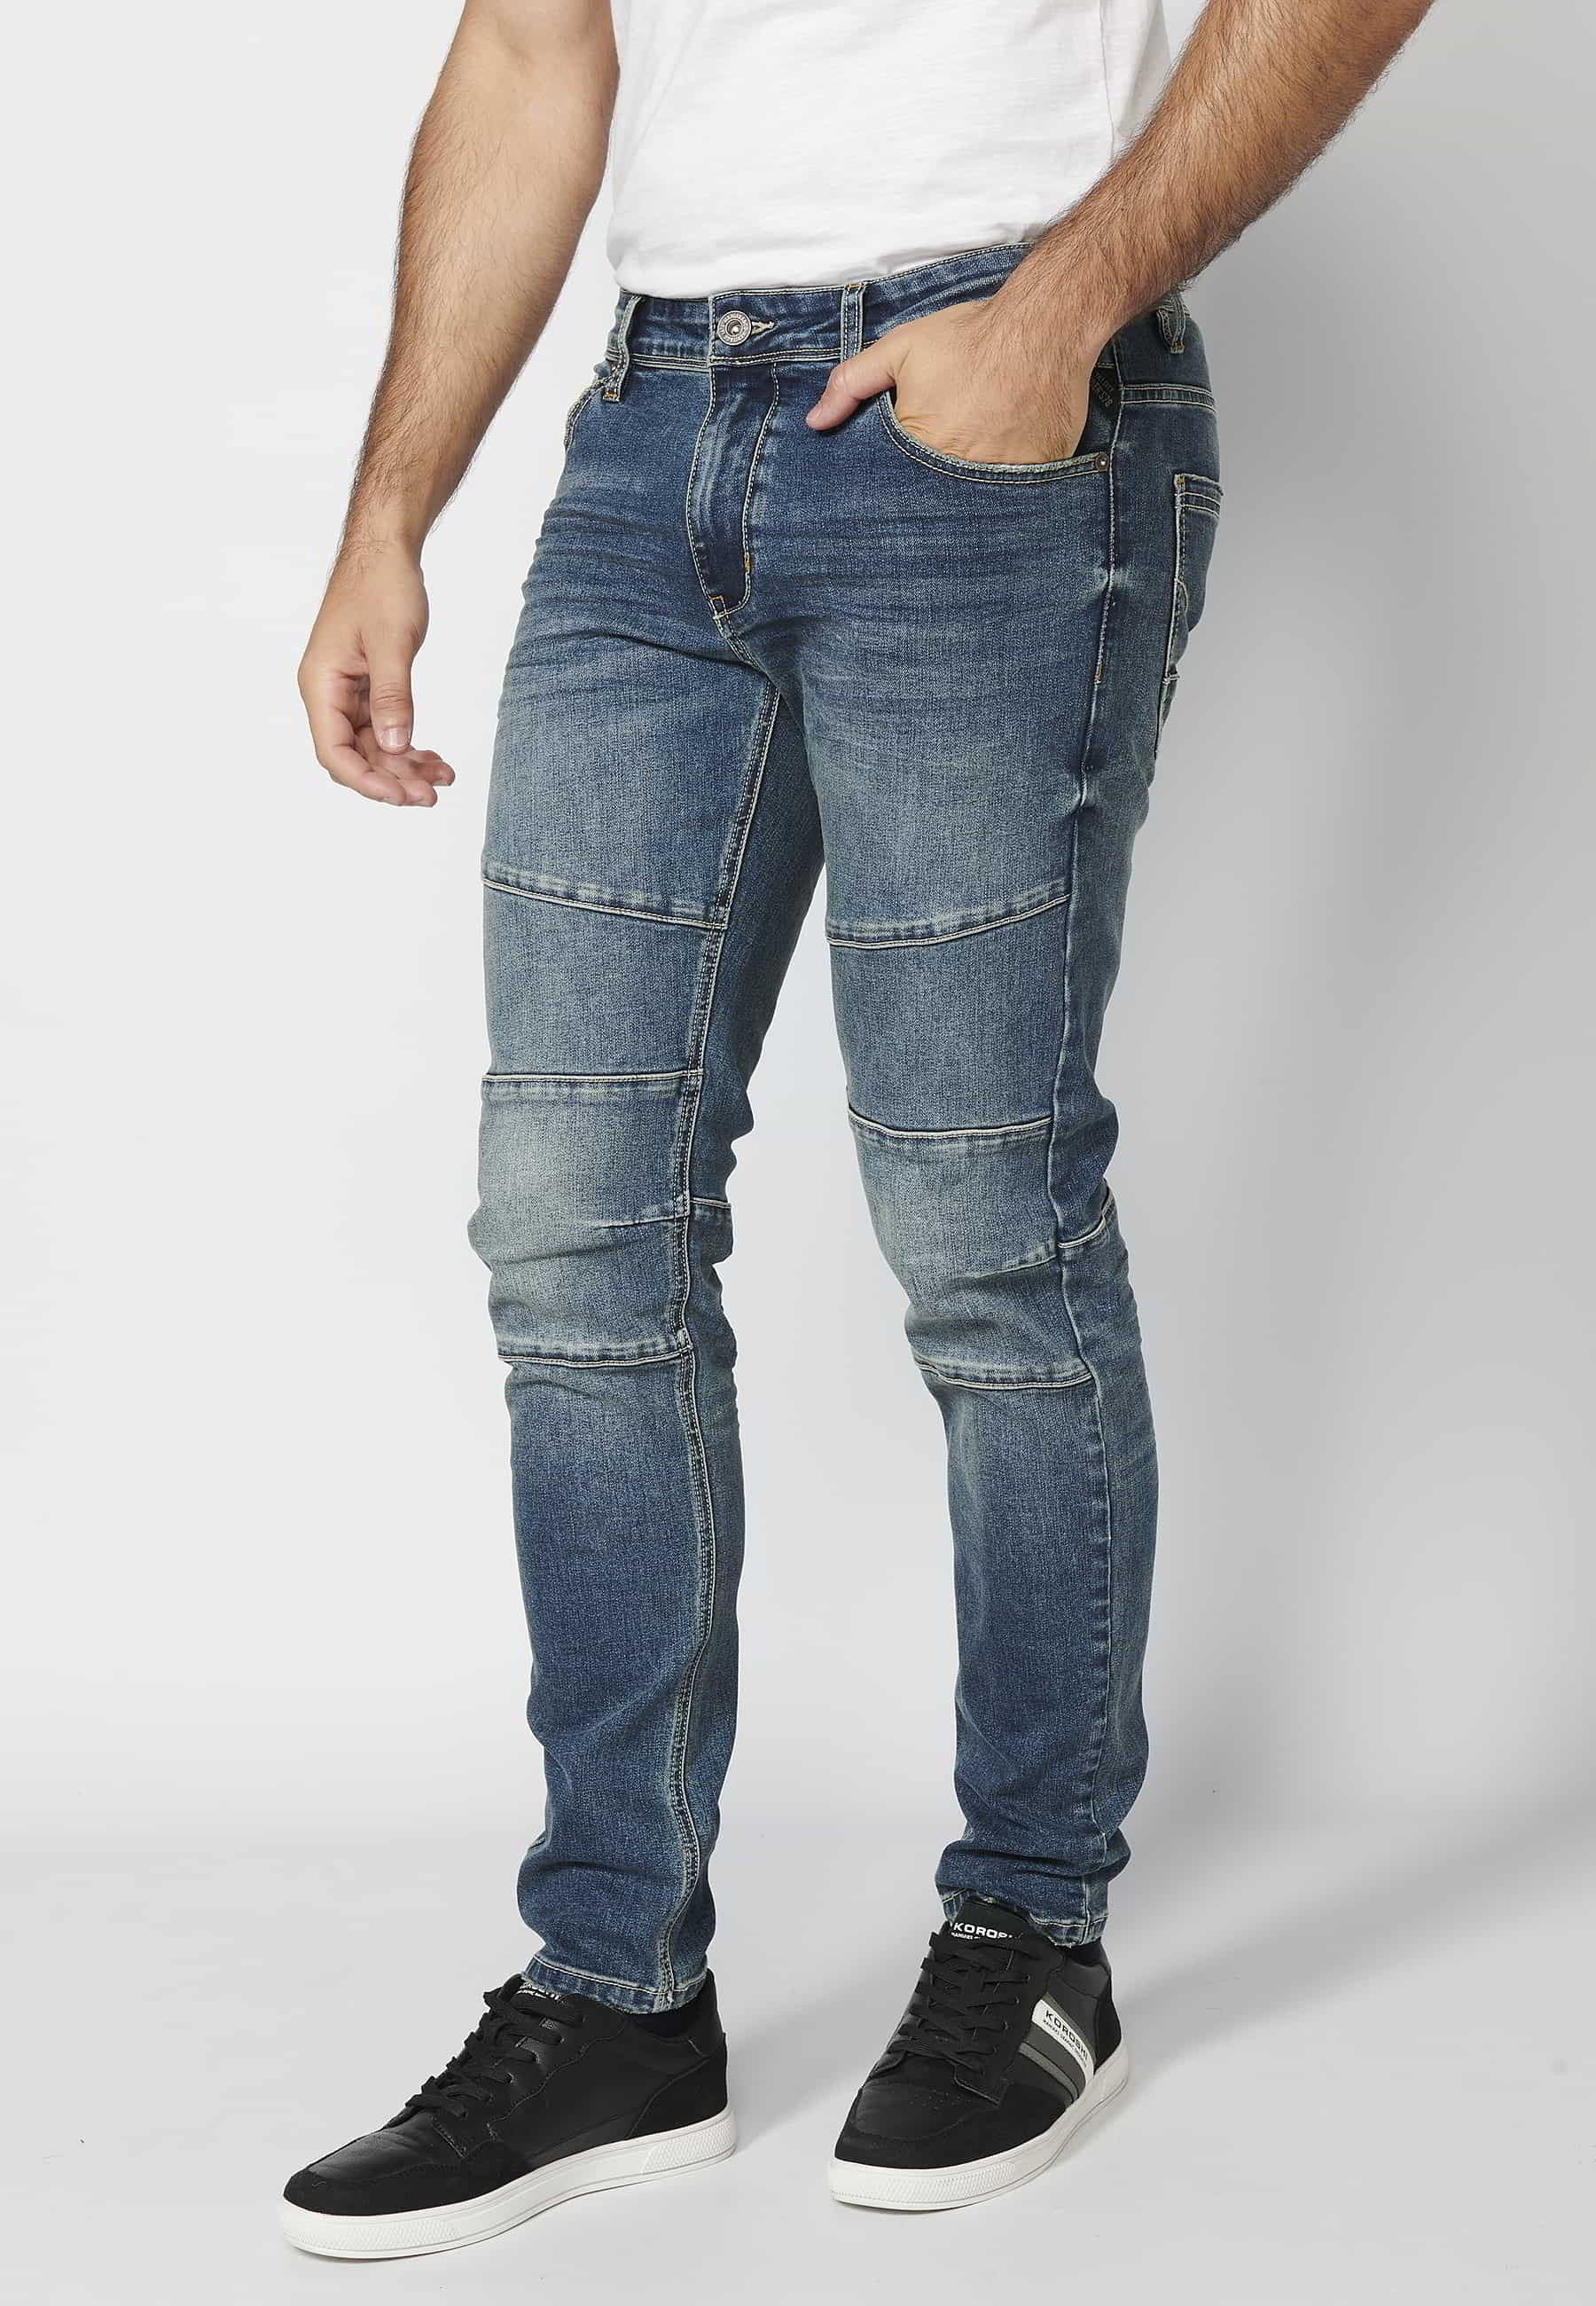 Pantalón largo jeans biker skinny fit con detalles en rodillas cinco bolsillos color Azul para Hombre 4